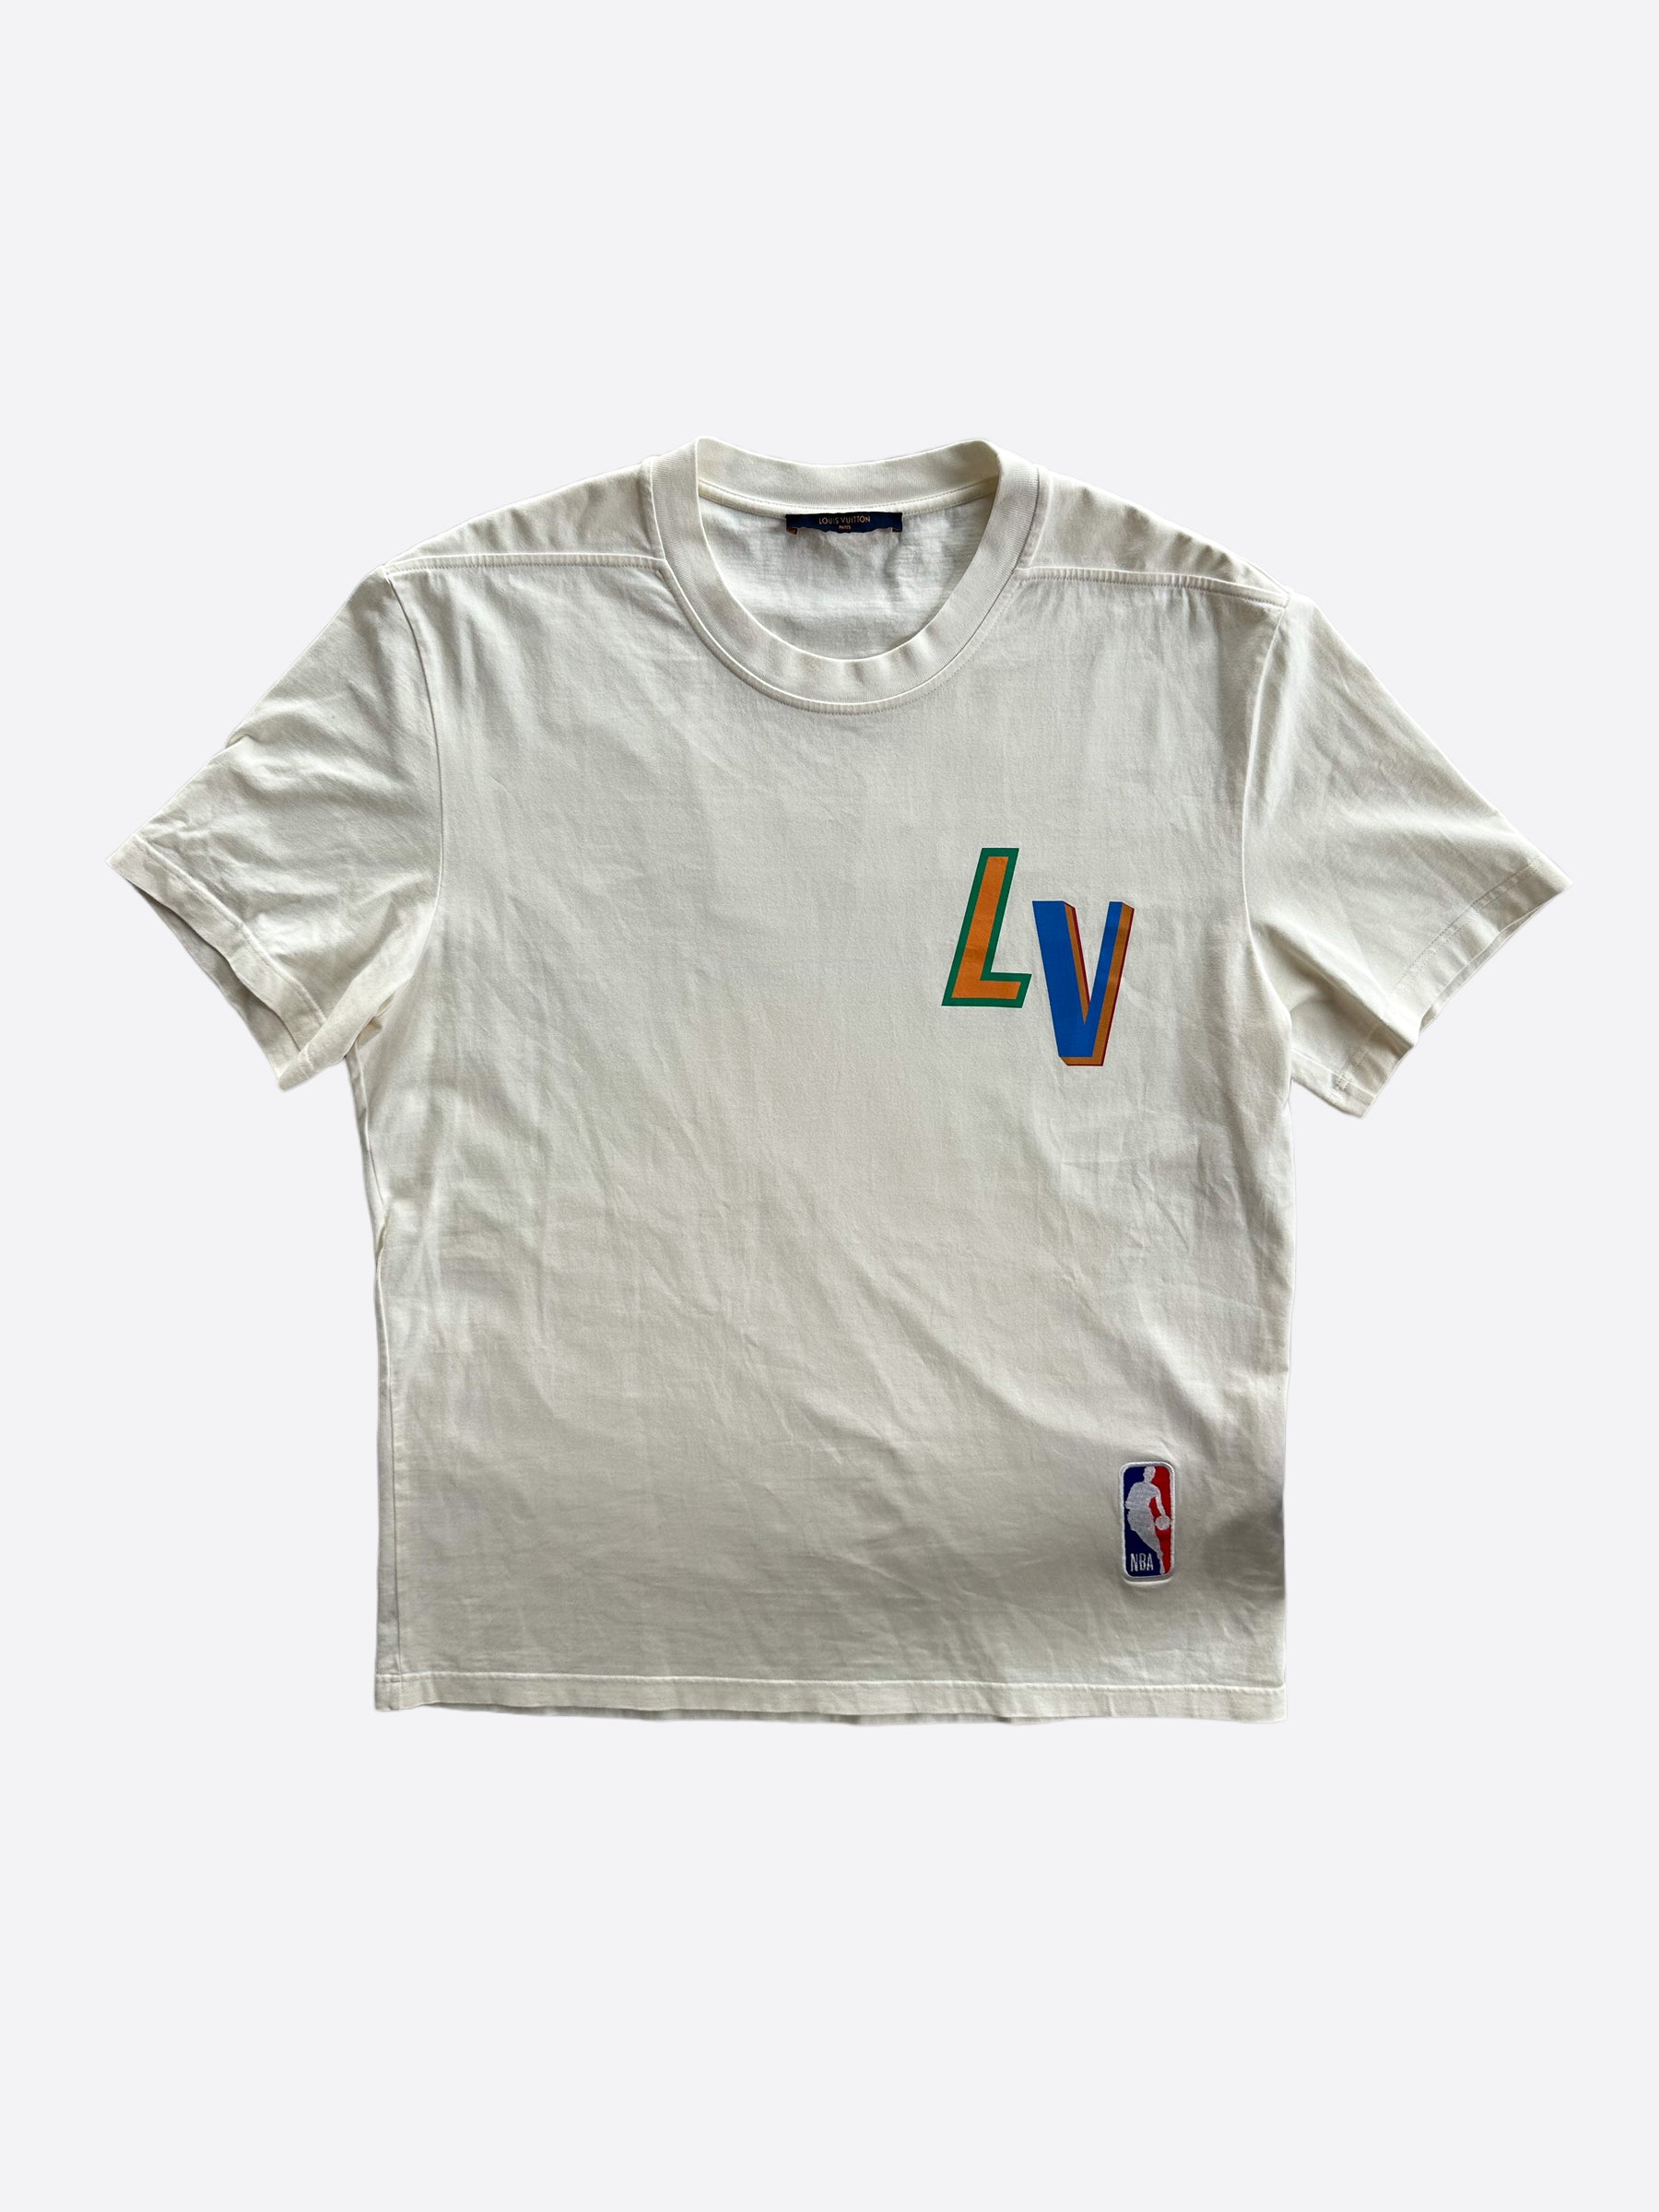 lv logo white